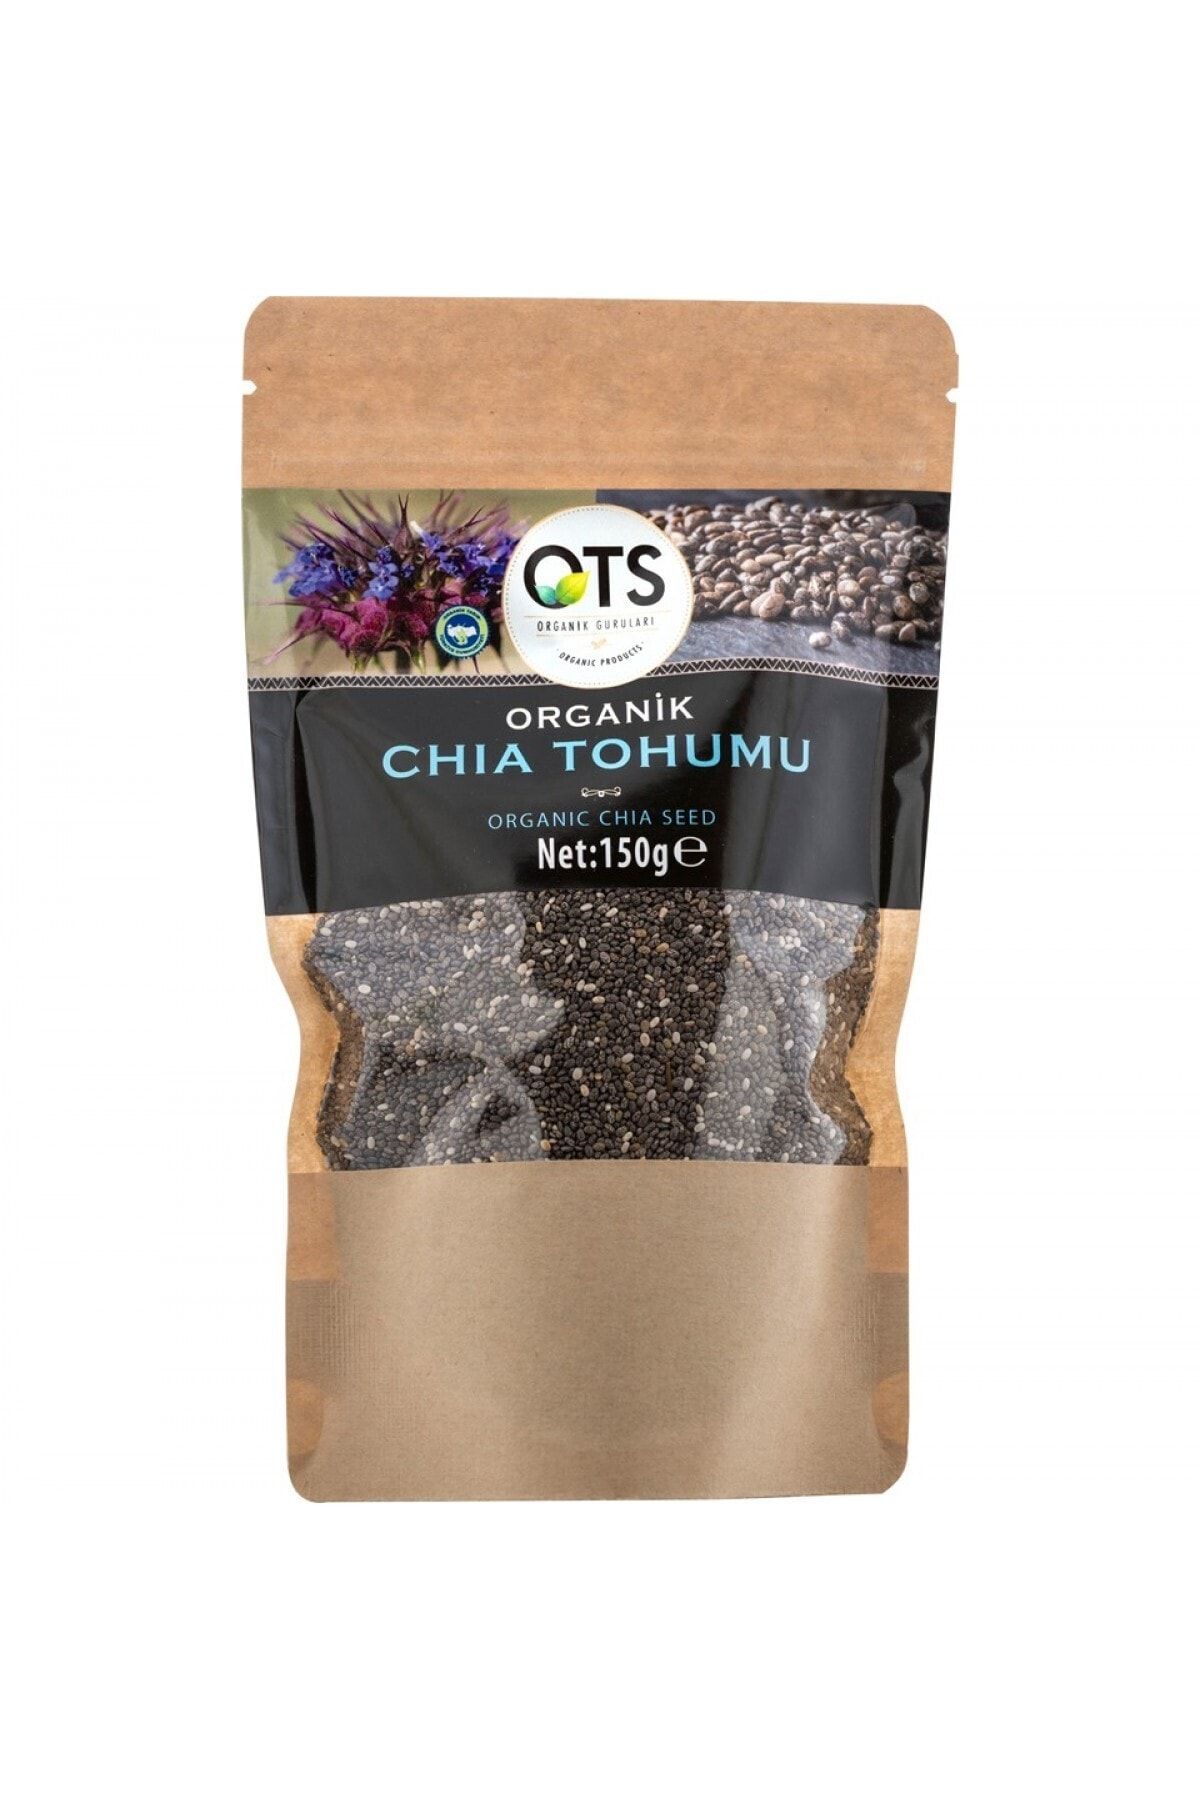 OTS Organik Chia Tohumu 150 Gr